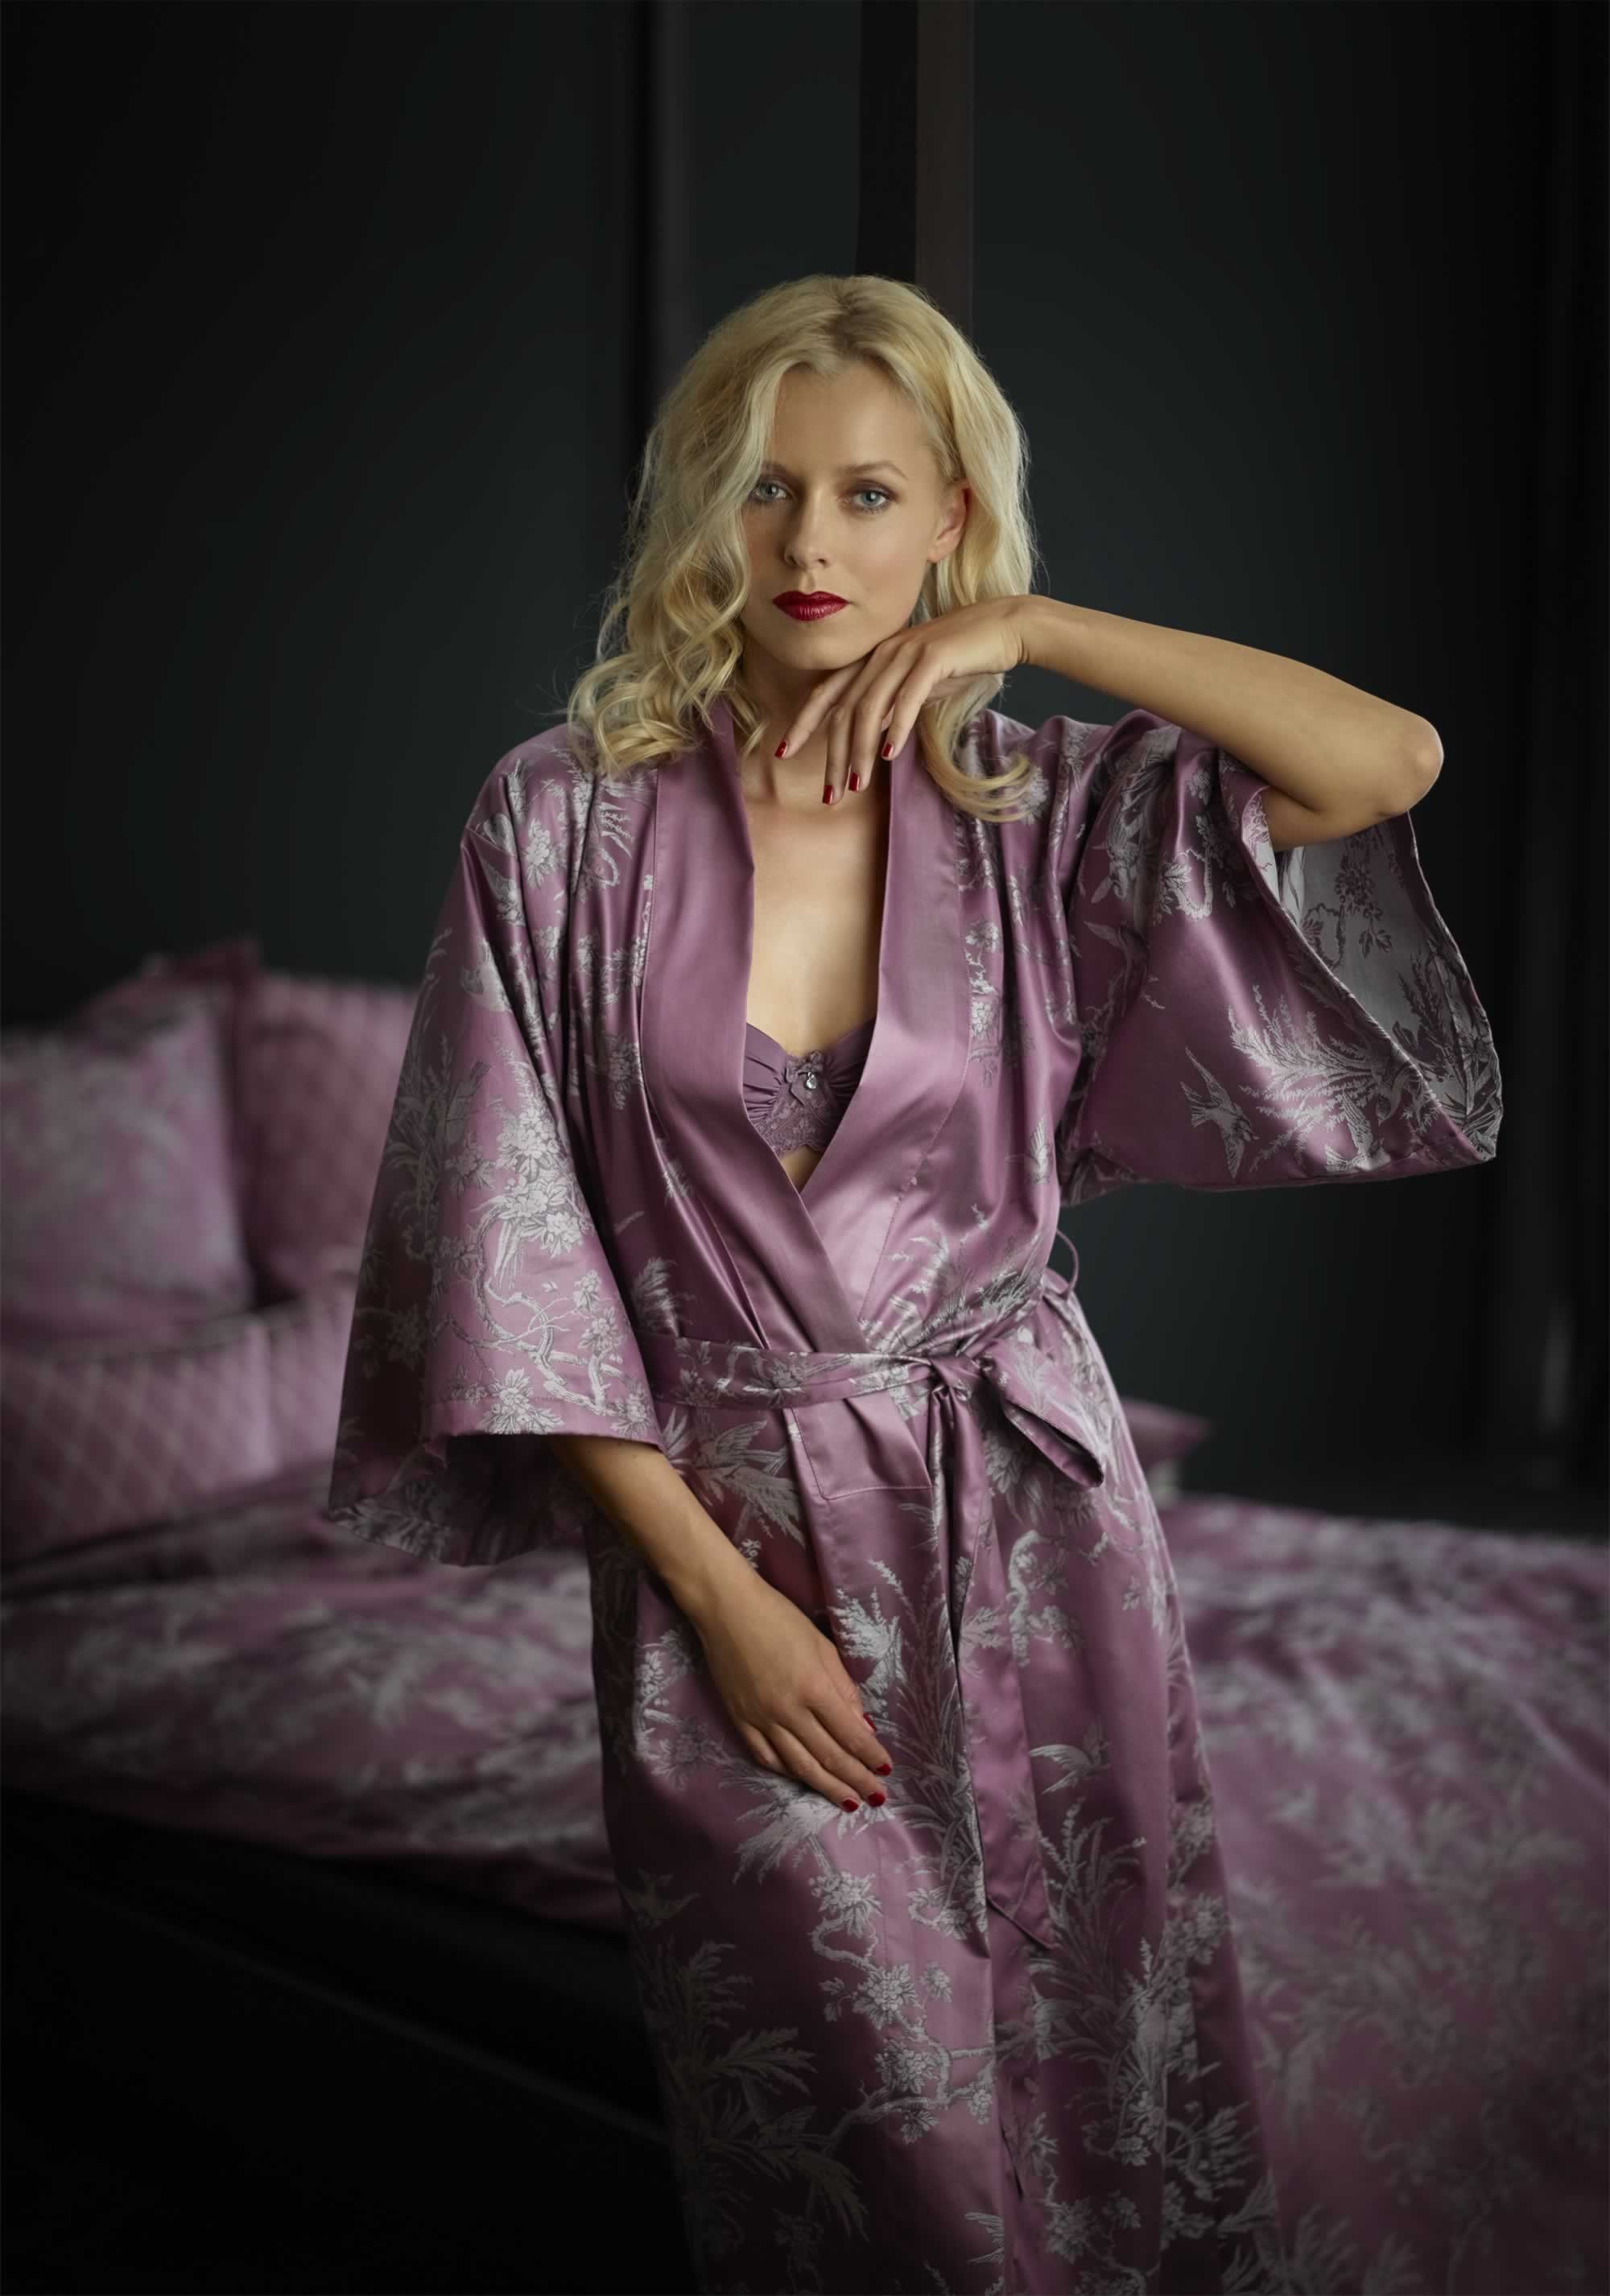 Тетка в халате. Mia-Mia кимоно "Loren" 16097. Джоанна Сторм в халате. Кейт Пирсон в халате. Кимоно Mia-Mia модель 5703.